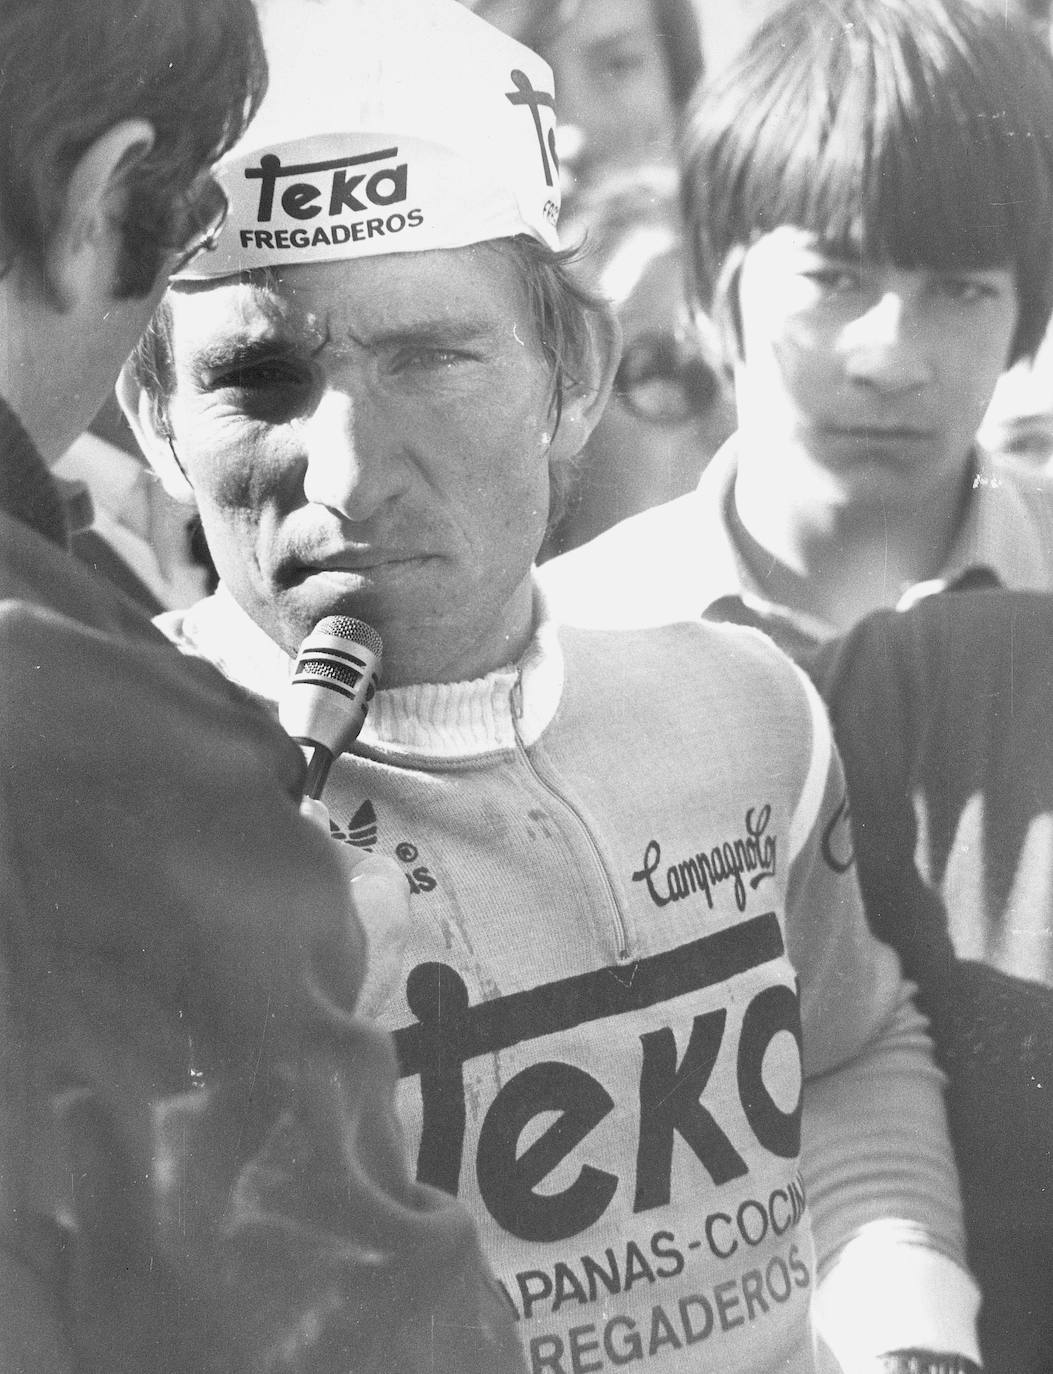 Alberto Fernández, ciclista del Teka, habla con los periodistas al final de una de las etapas de montaña de la Vuelta Ciclista al País Vasco de 1980.